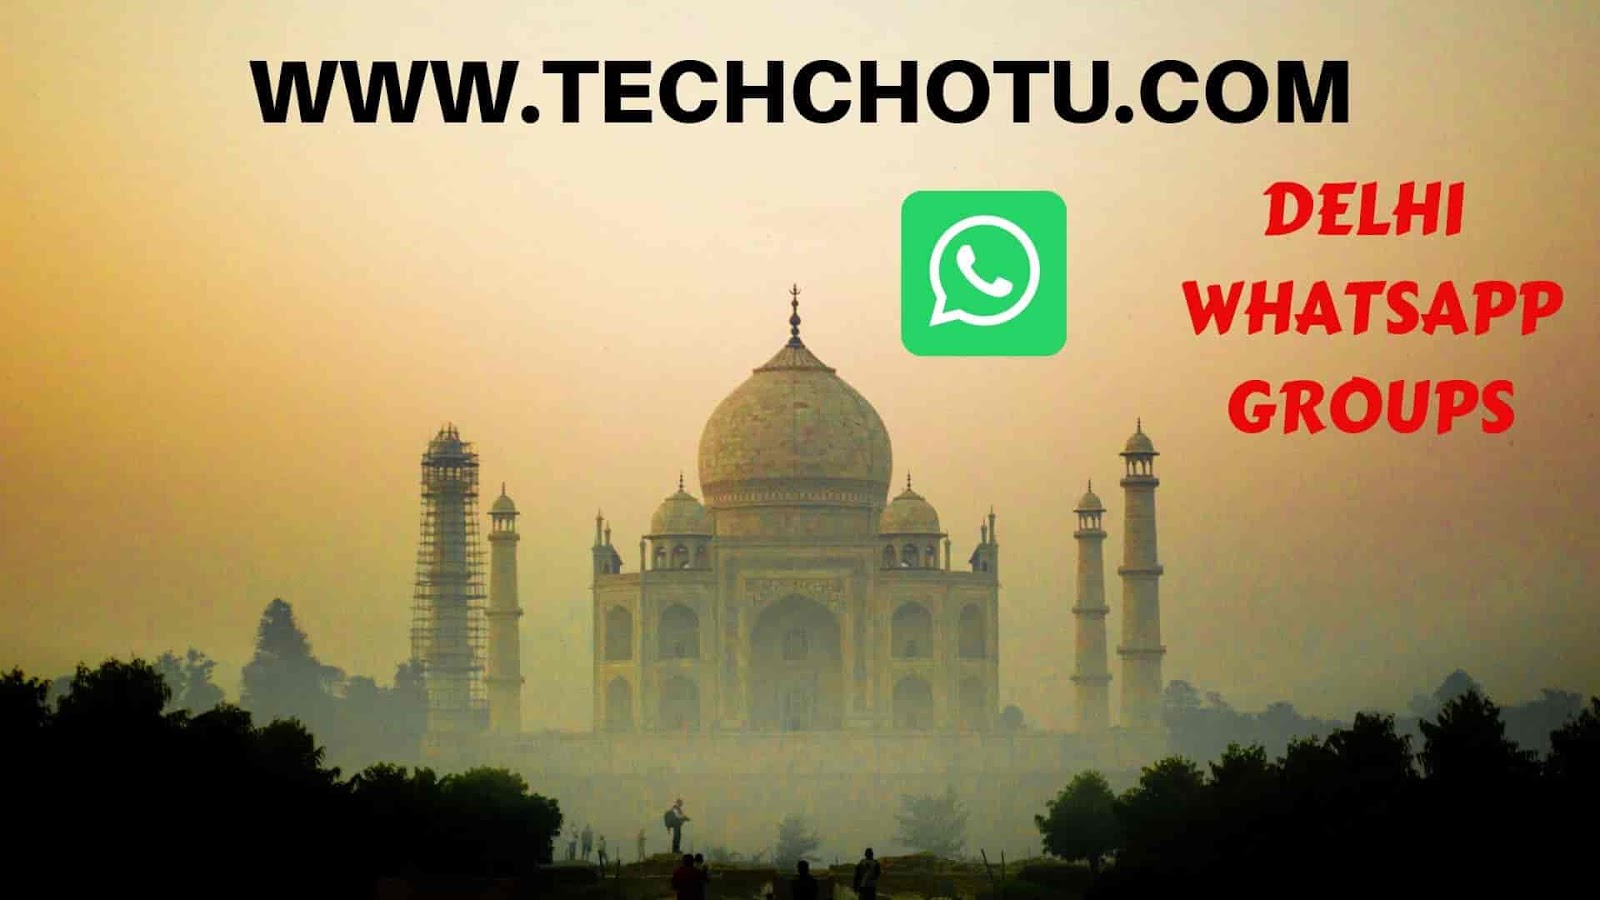 DELHI WHATSAPP GROUP LINKS - WhatsApp Group Links 2022:TECHCHOTU